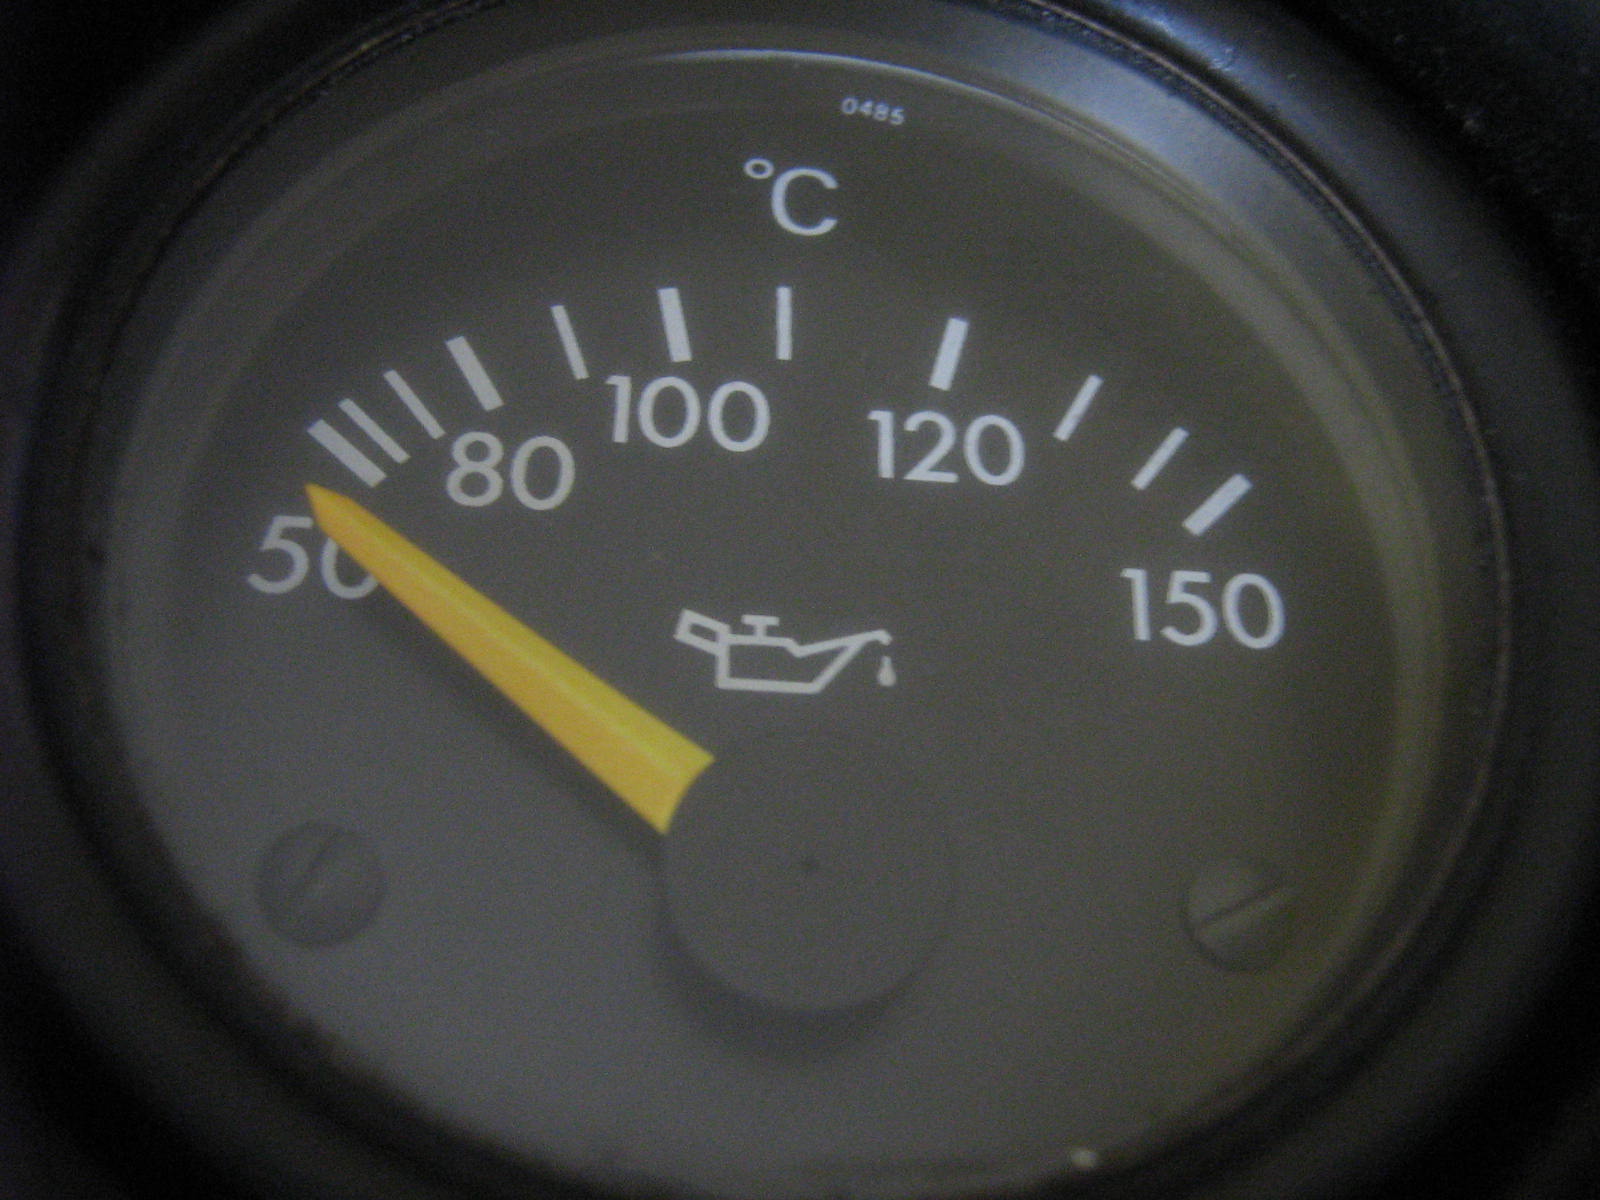 Wskaźnik temperatury oleju VDO jakiś Mercedesjak podłączyć?